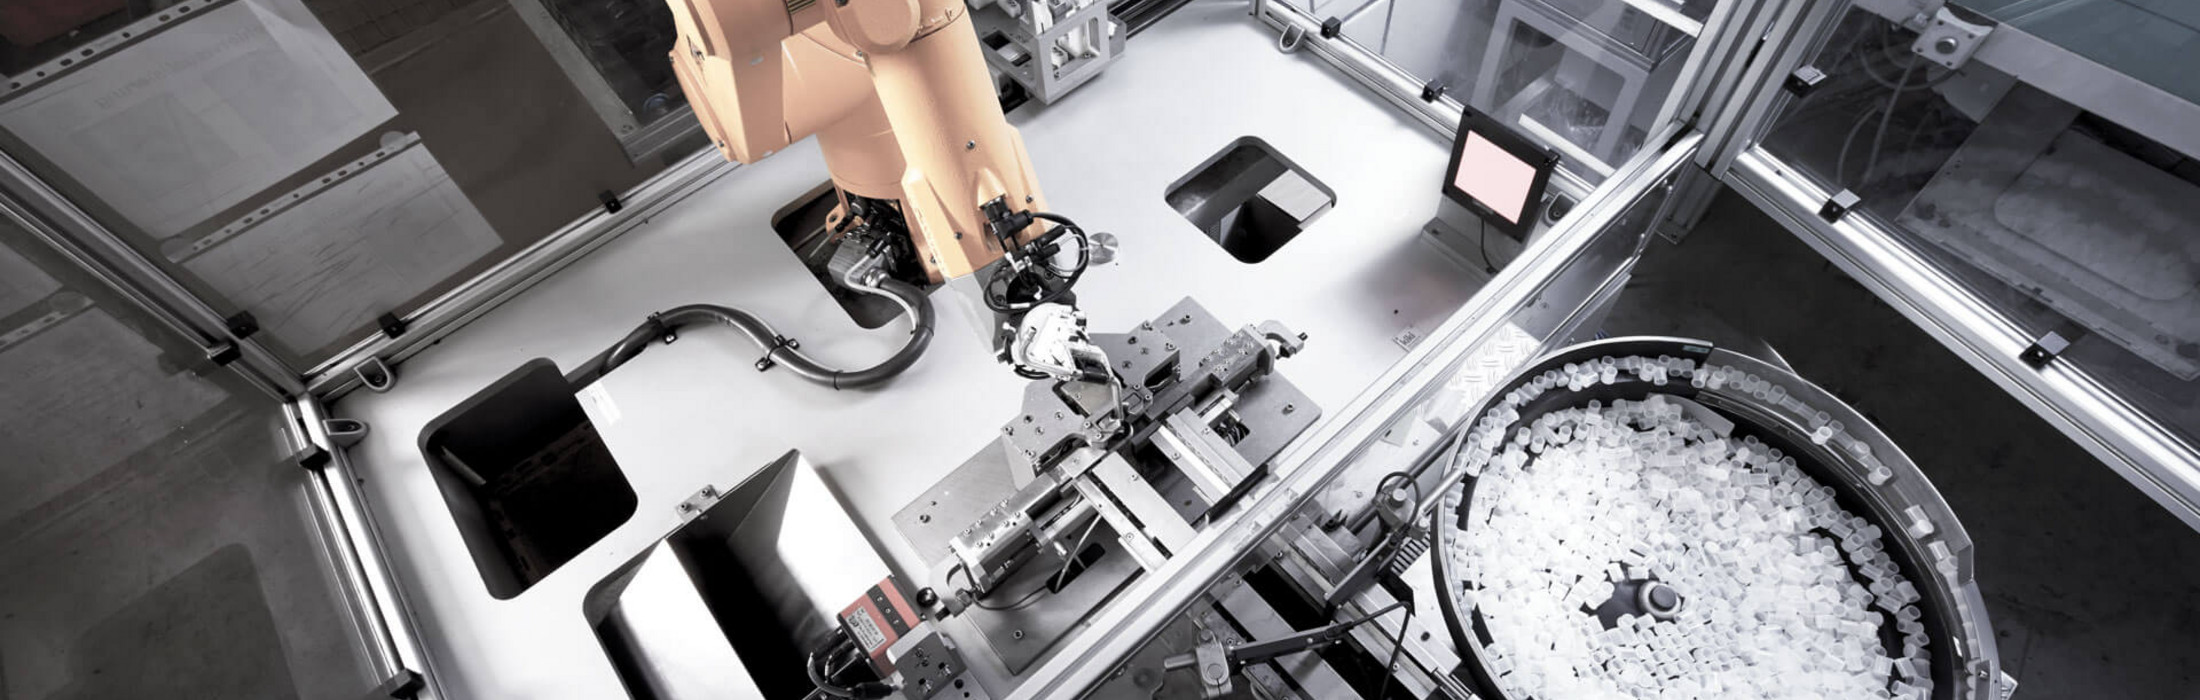 Ein Roboterarm in einer Maschinenkabine.